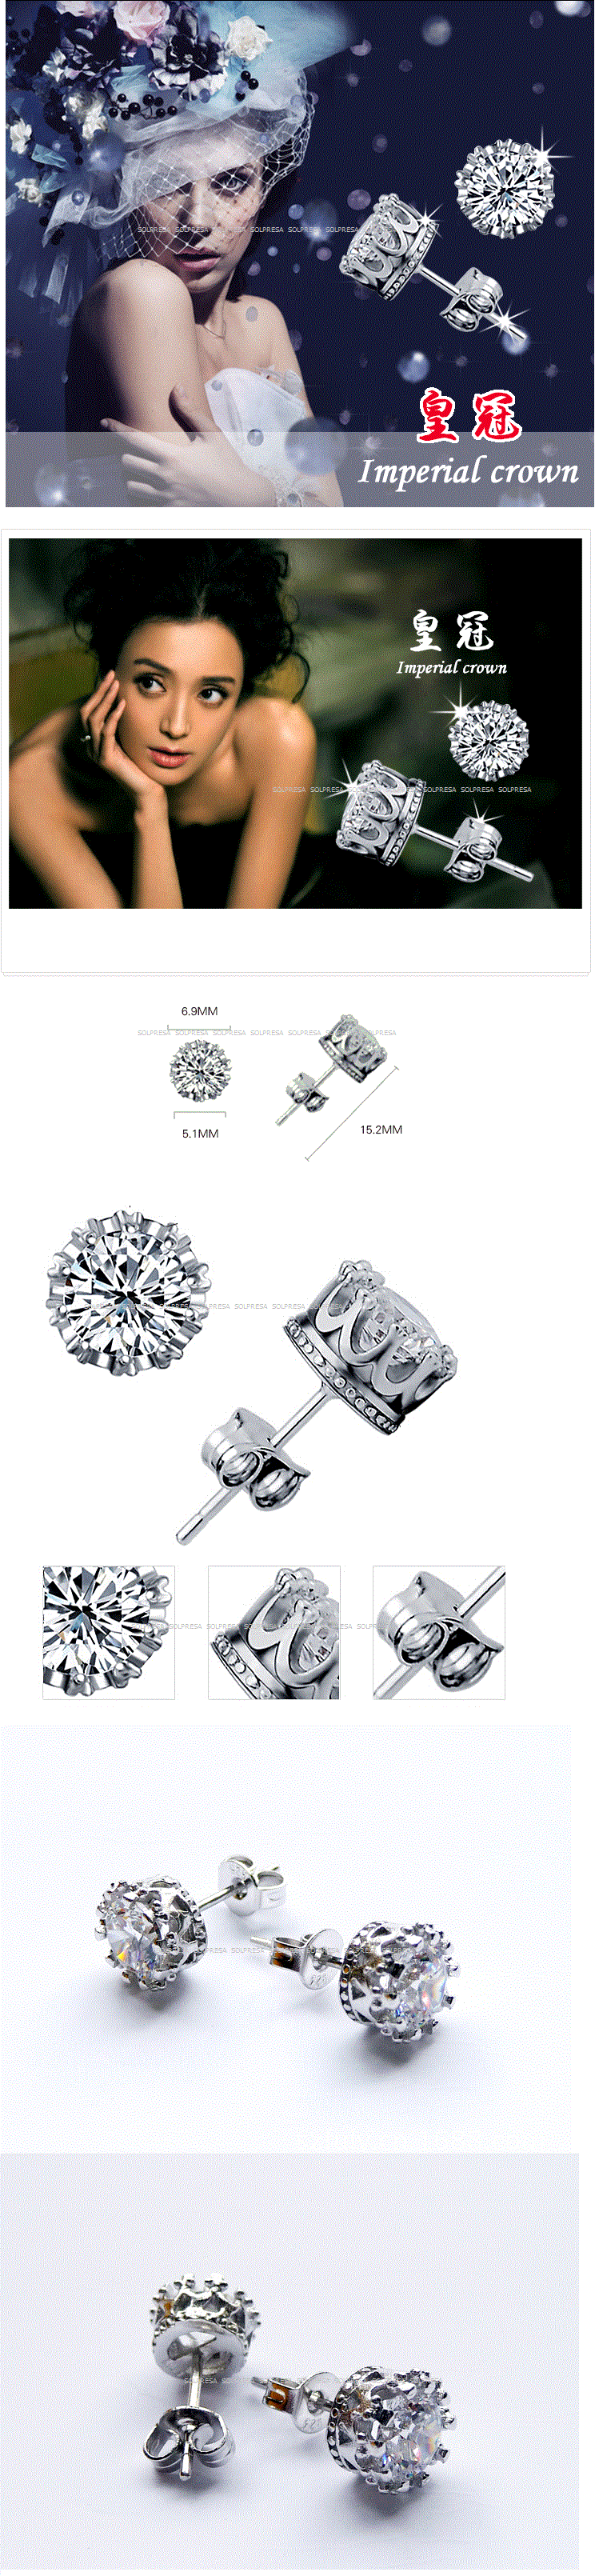 Solpresa Imperial Crown Rhodium AAA White Diamond Earrings